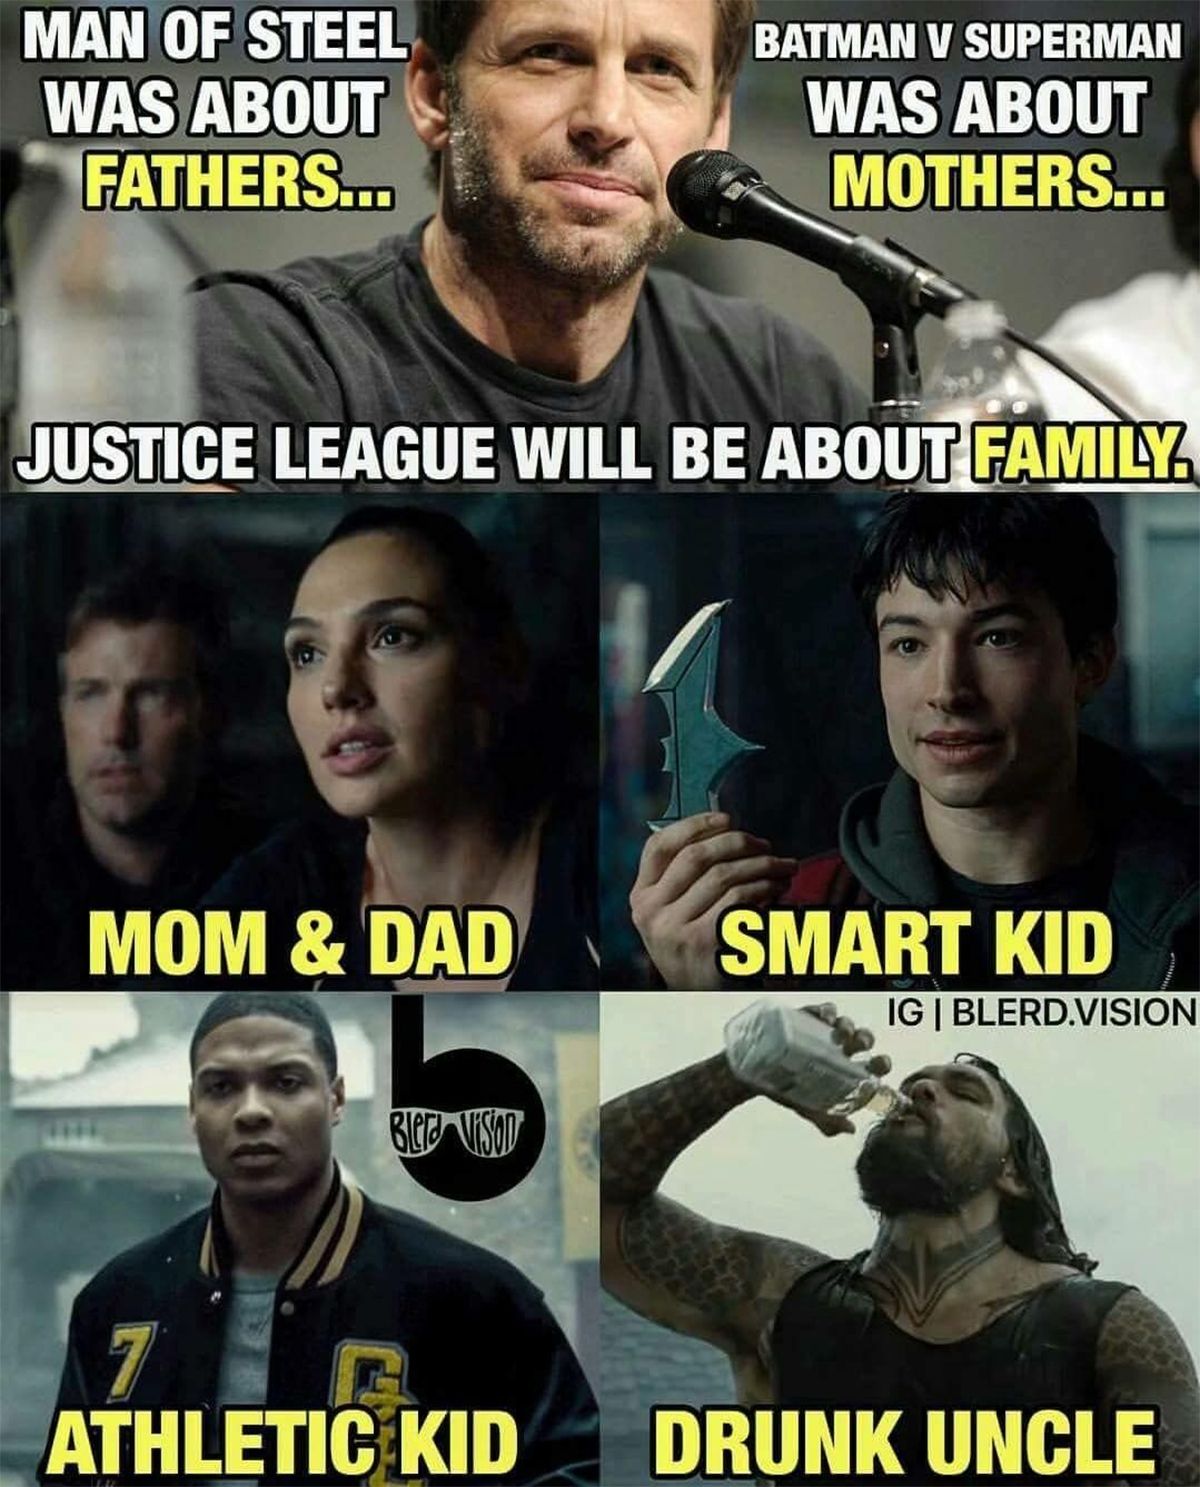  Zack Snyder's Family